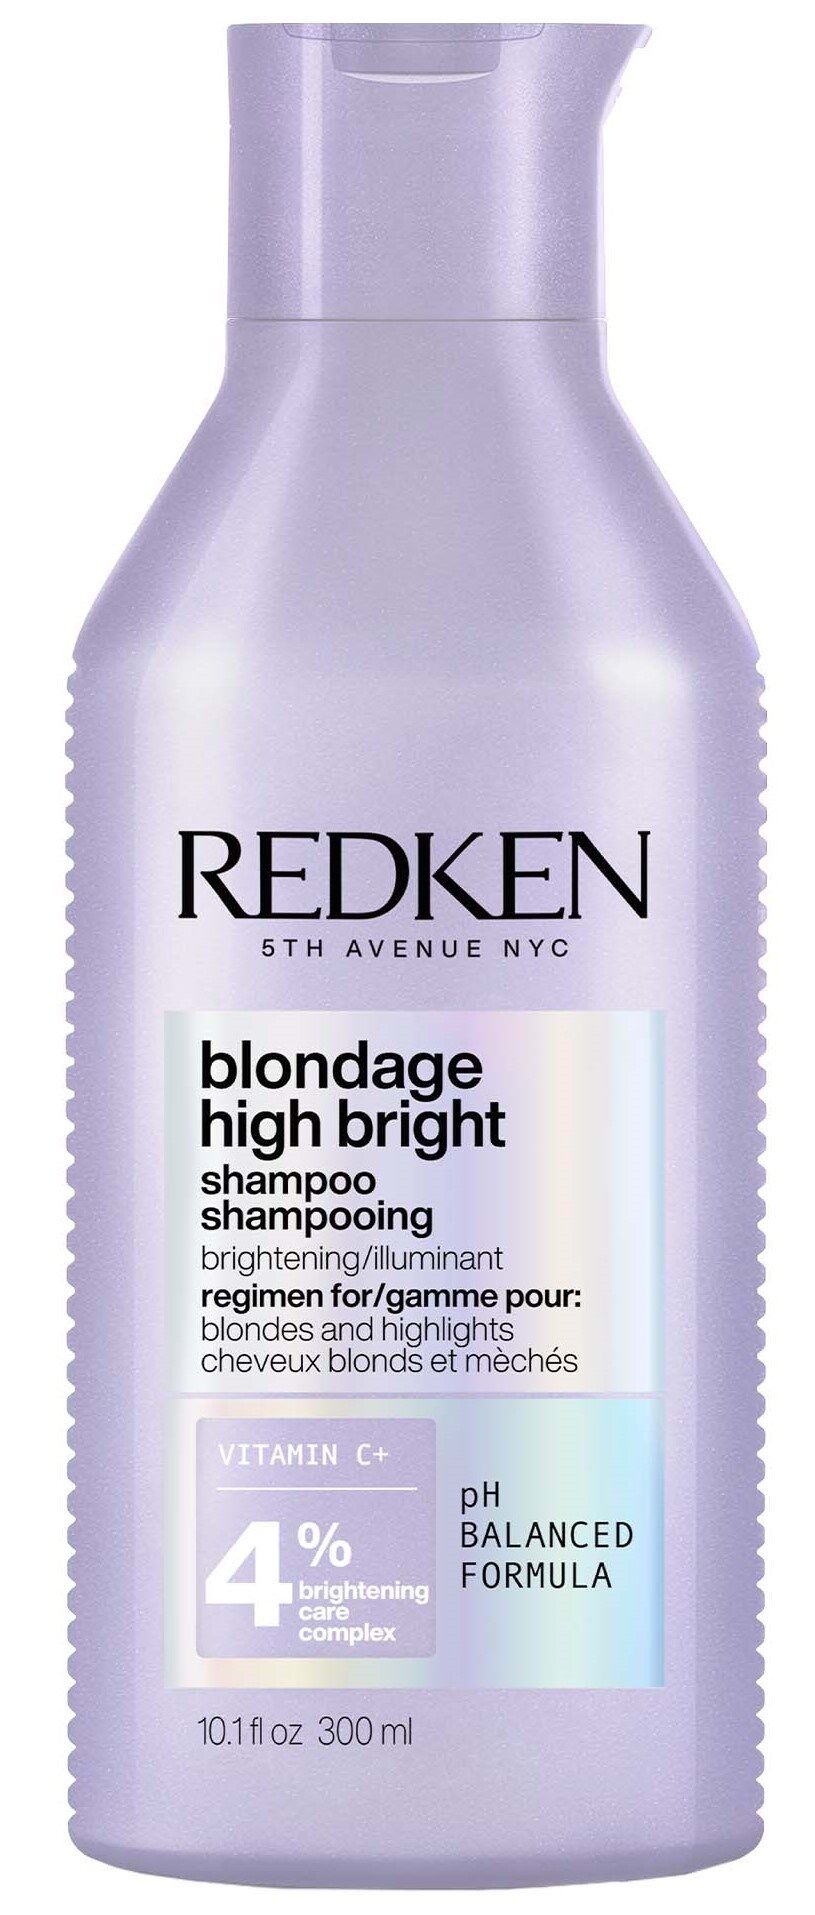 Redken Champú alto brillo Blondage Protección del color del cabello 300mL